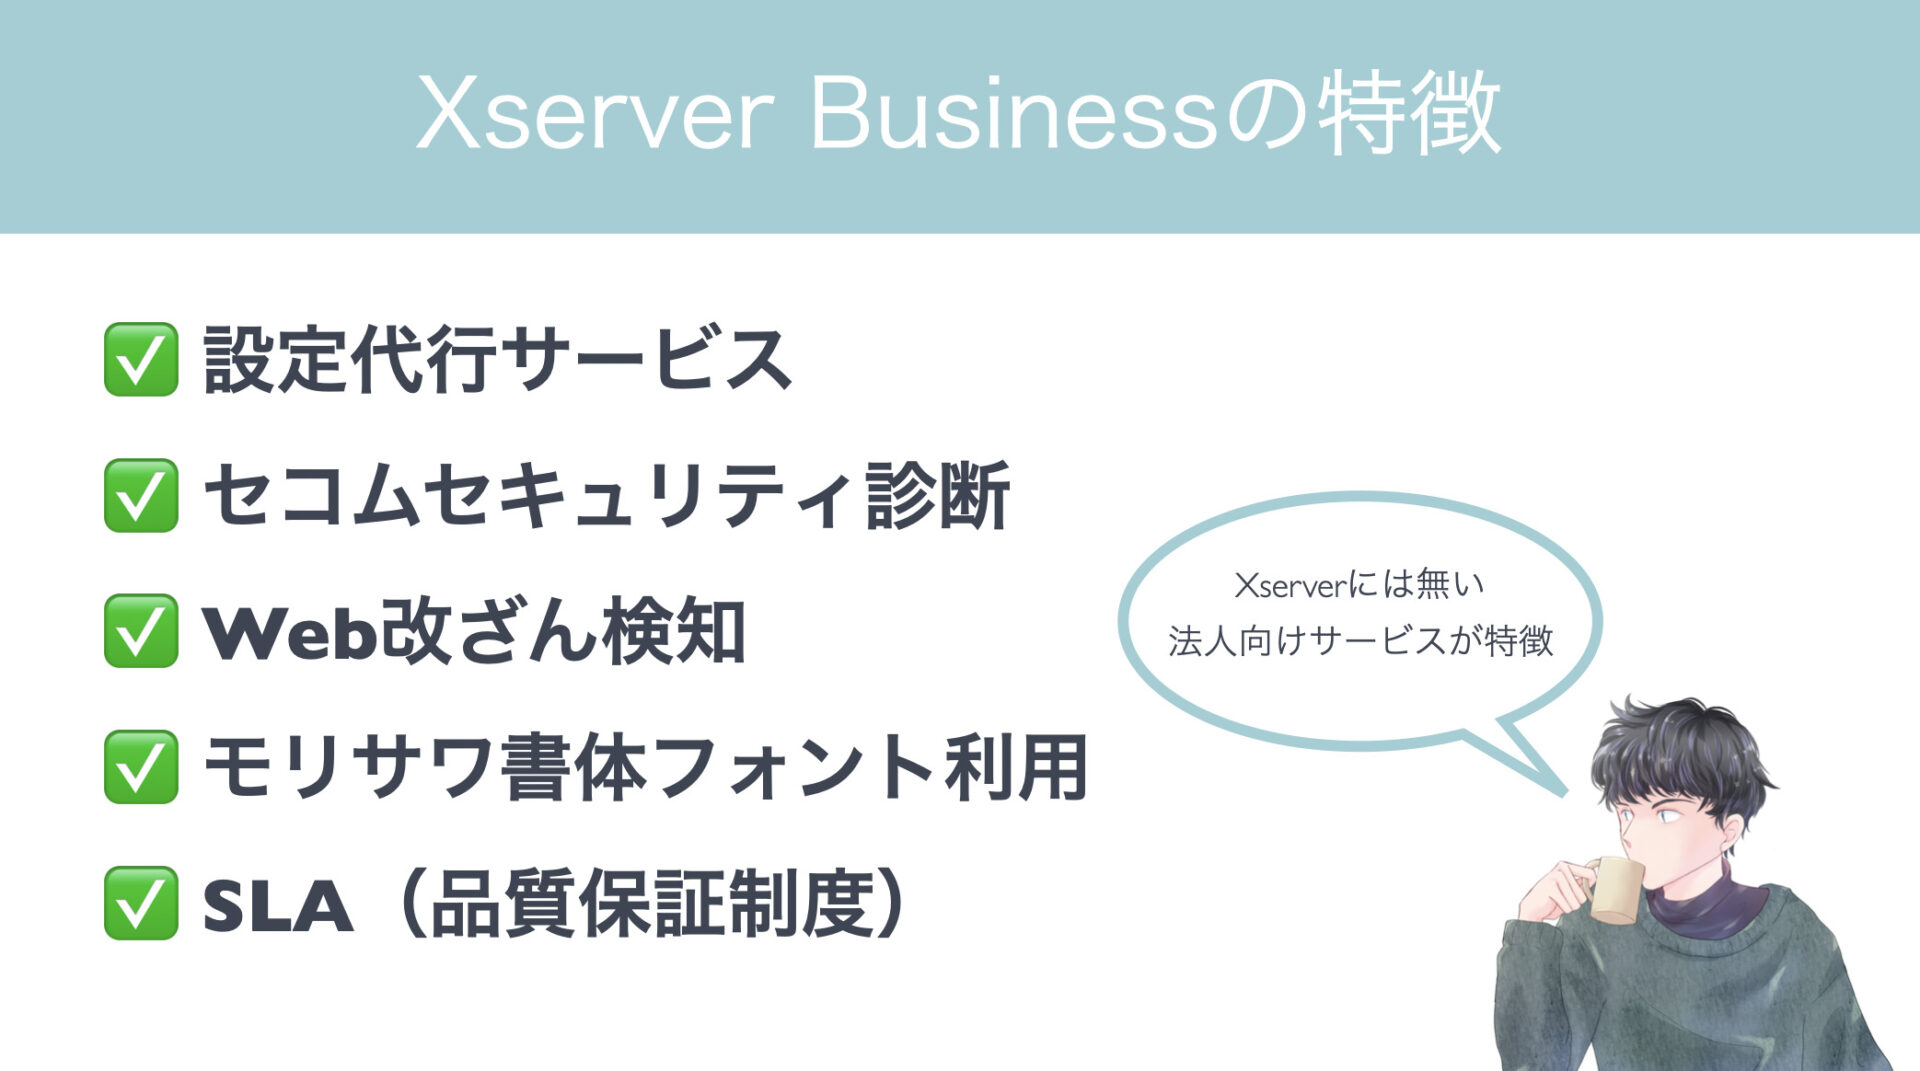 XserverbusinessではXserverには無い法人に特化したサービスが特徴です